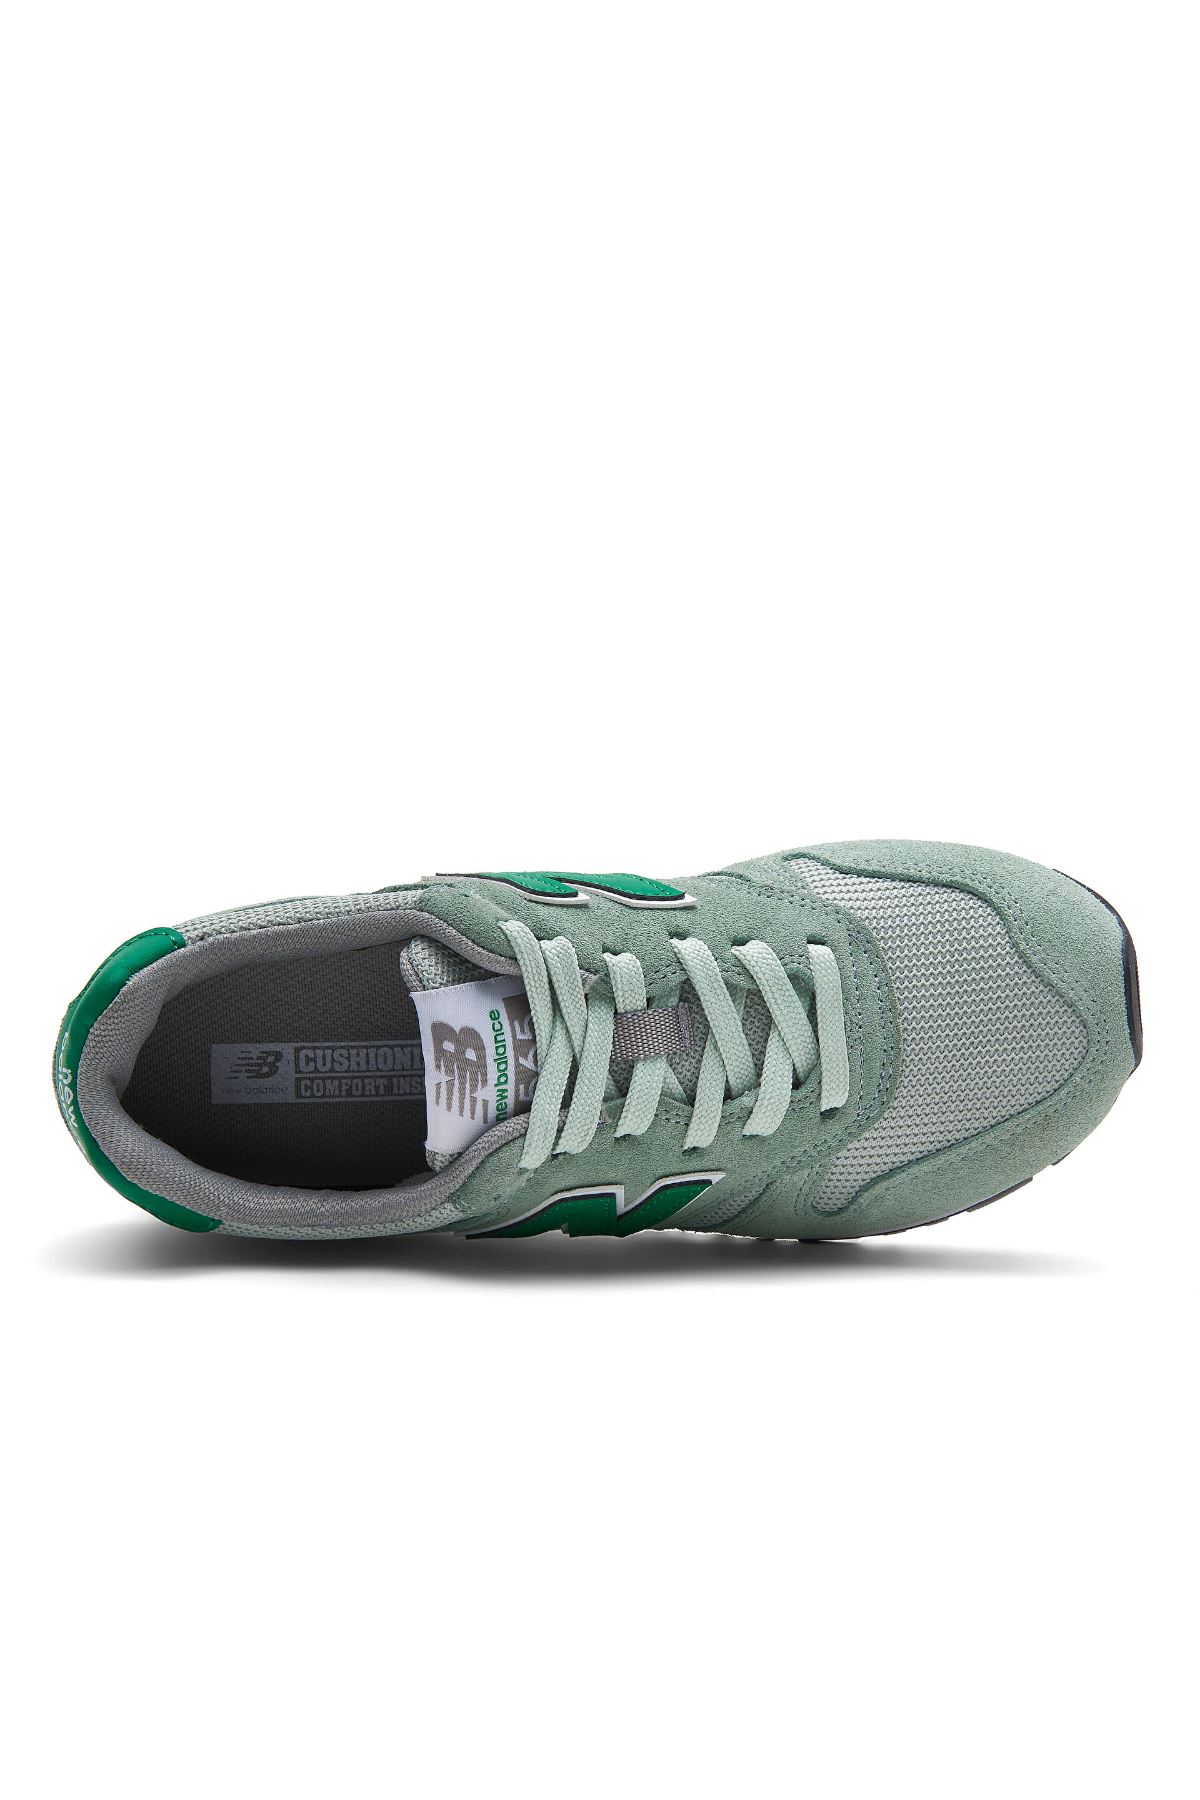 New Balance Nb Lifestyle Kadın Yeşil Spor Ayakkabı - Wl565Lgr